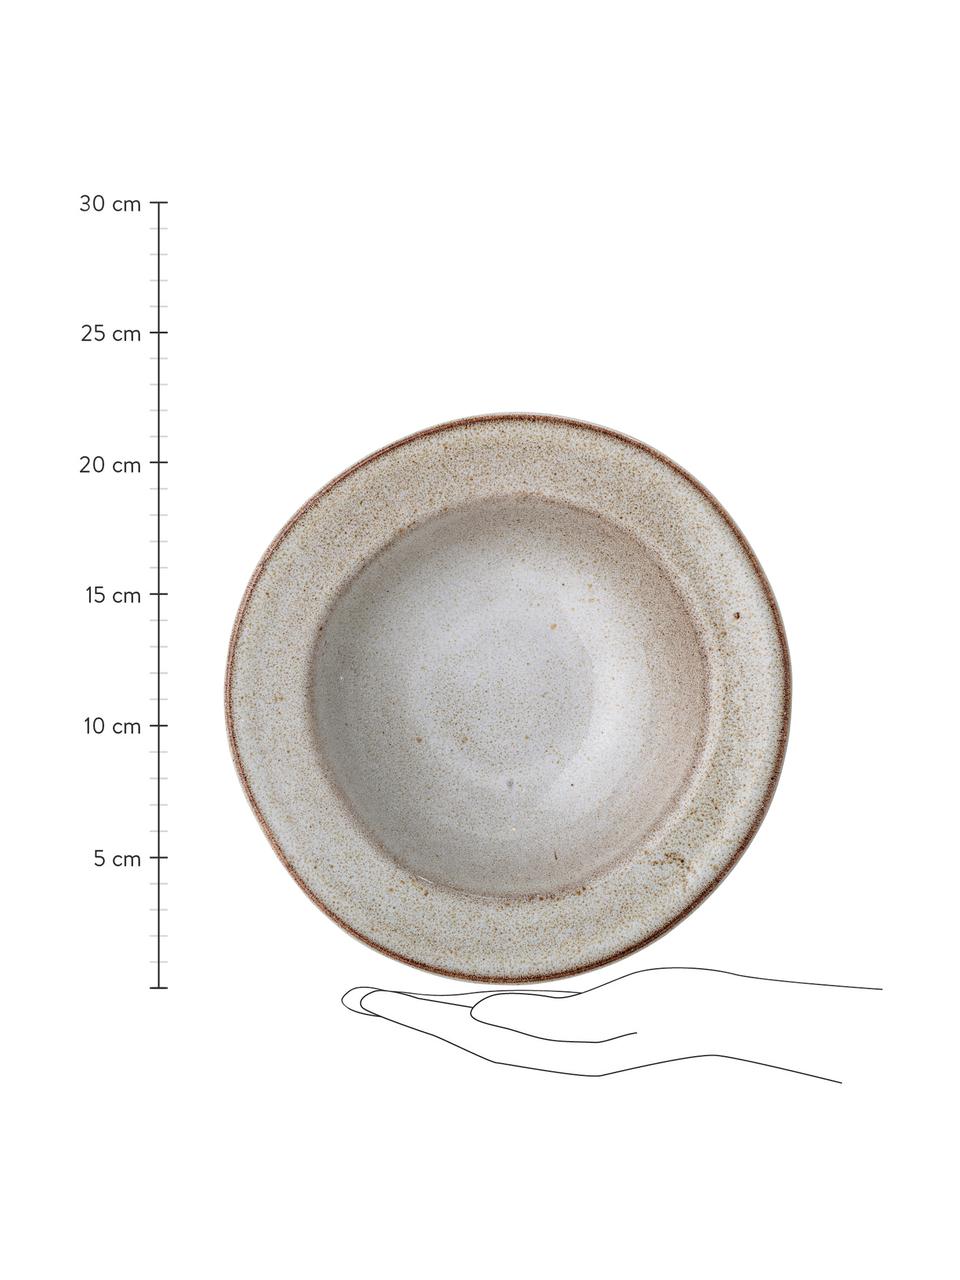 Assiette creuse rustique faite main Sandrine, Grès cérame, Tons beiges, Ø 22 cm